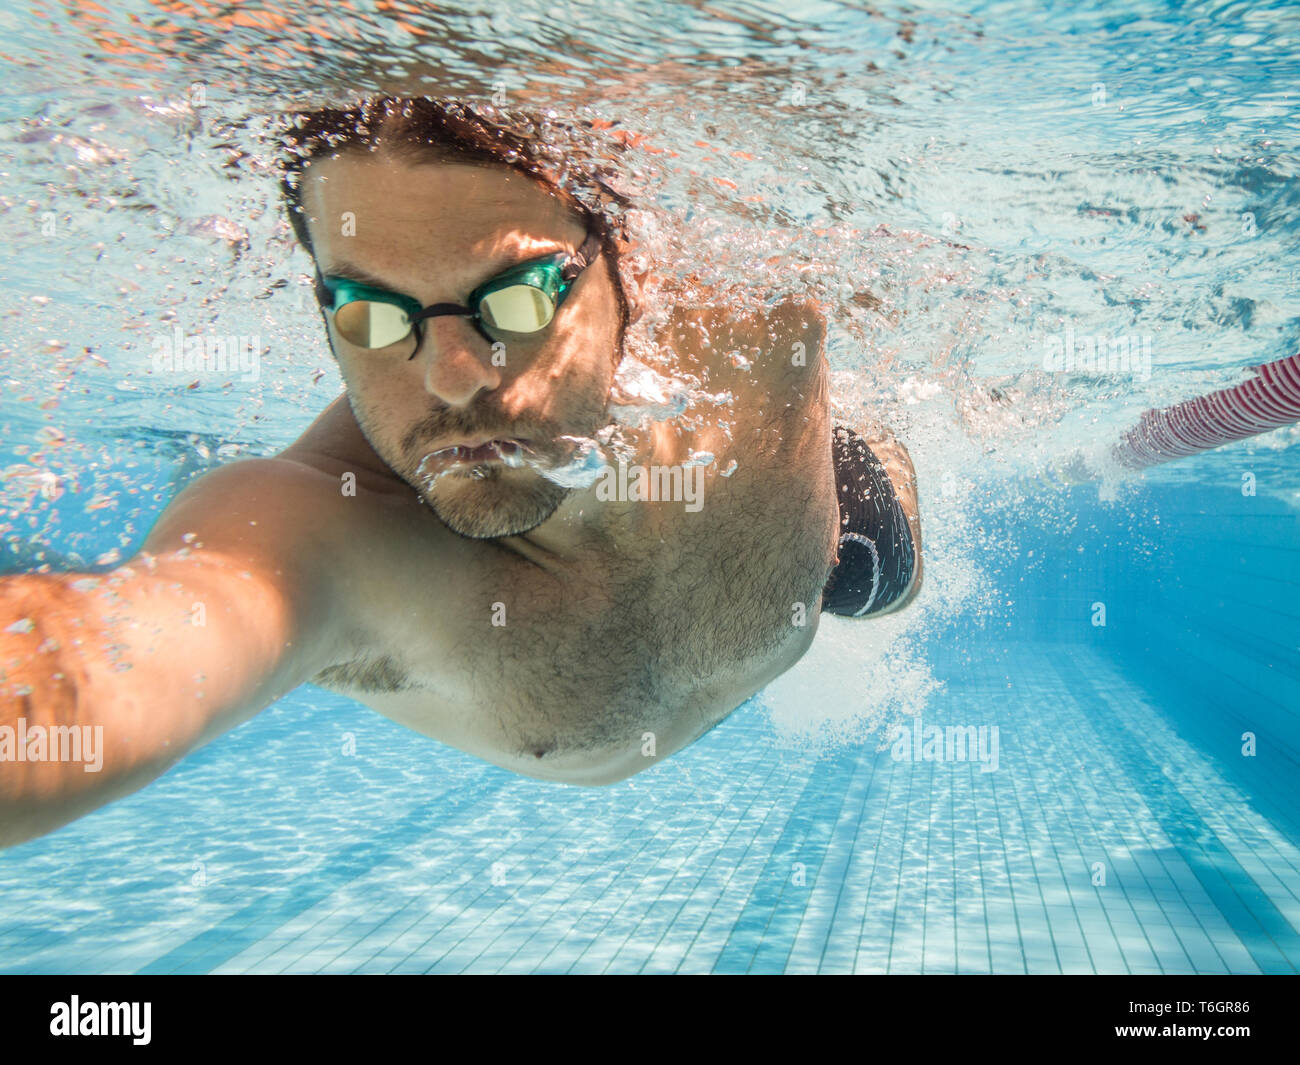 Nadador masculino en la piscina.Fotografía submarina con espacio de copia. Foto de stock